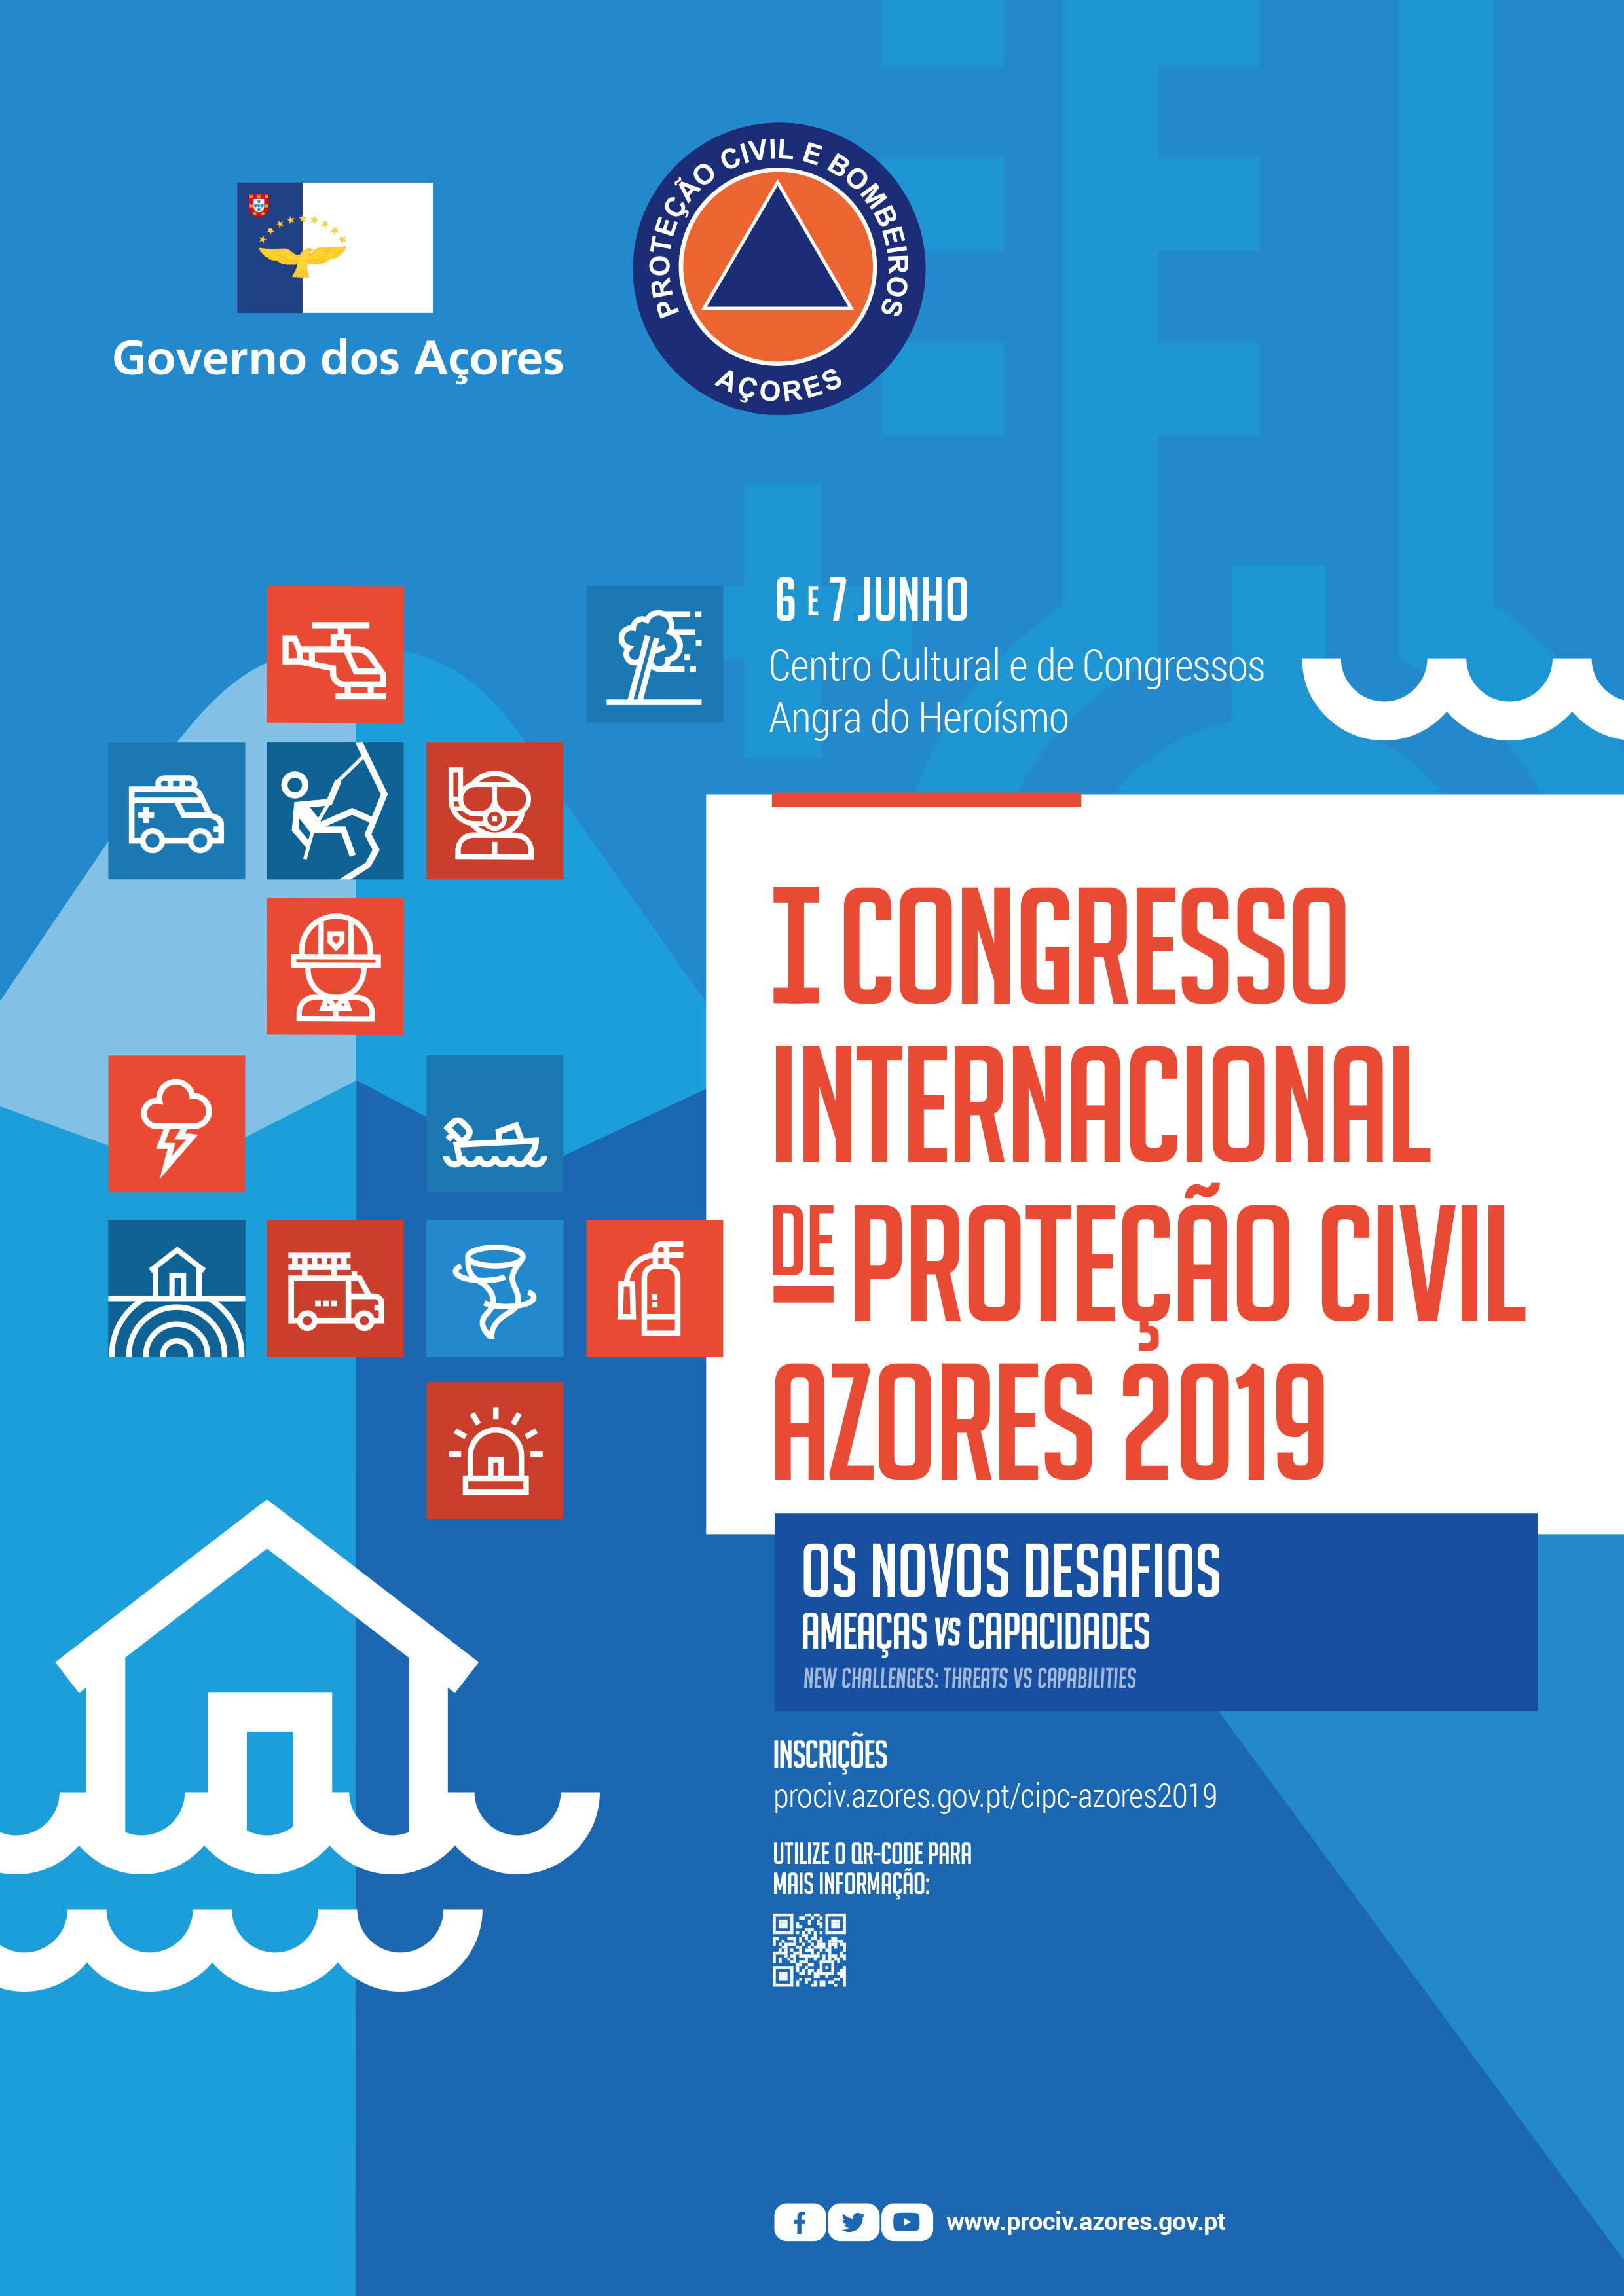 Proteção Civil Dos Açores Espera 200 Participantes Em Congresso Internacional Notícia Ovga 06 9641